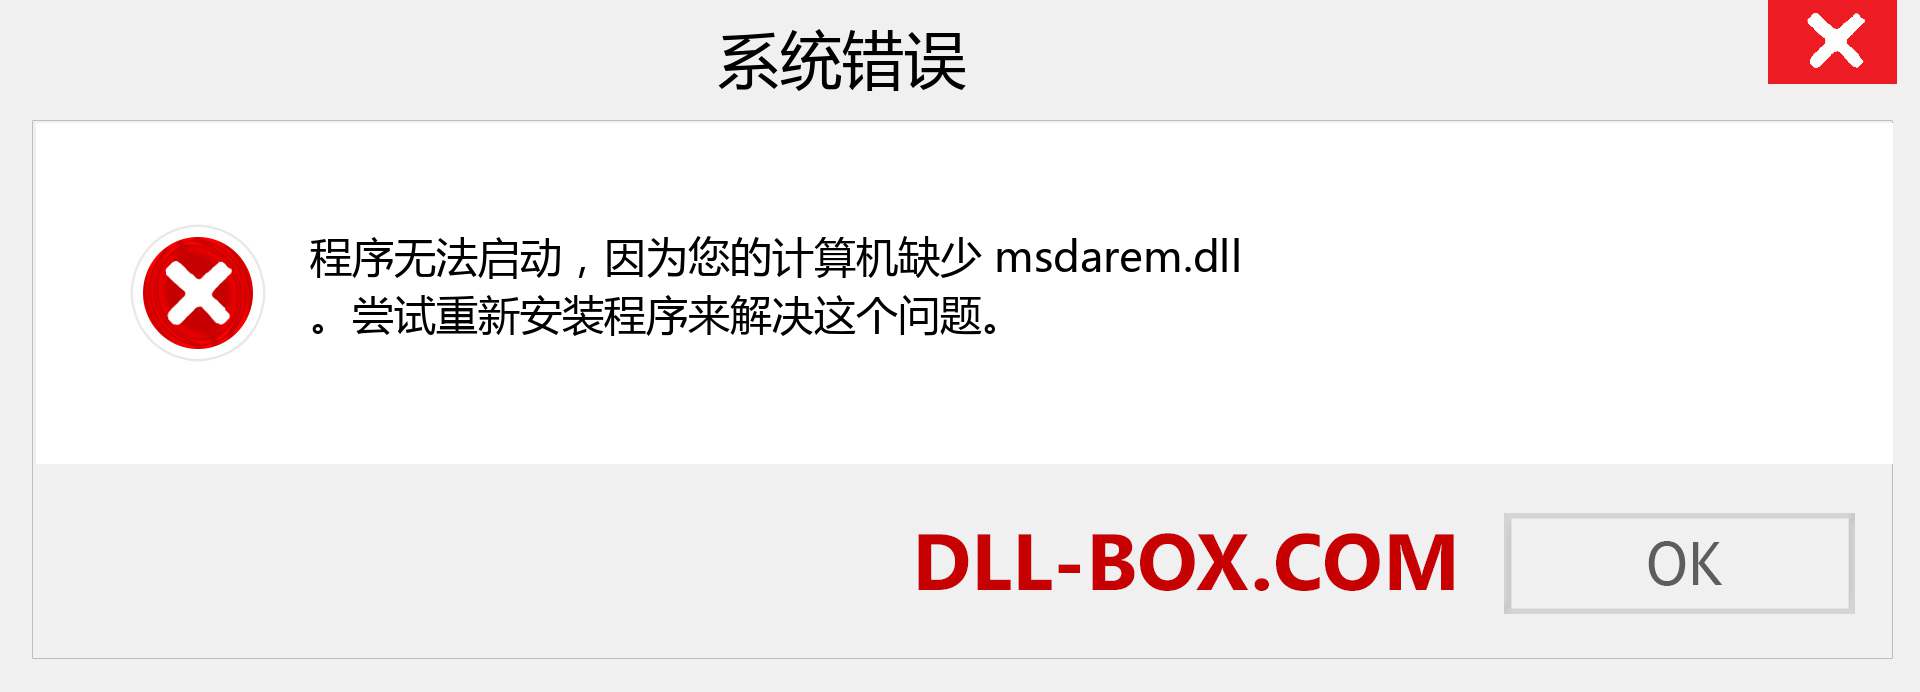 msdarem.dll 文件丢失？。 适用于 Windows 7、8、10 的下载 - 修复 Windows、照片、图像上的 msdarem dll 丢失错误